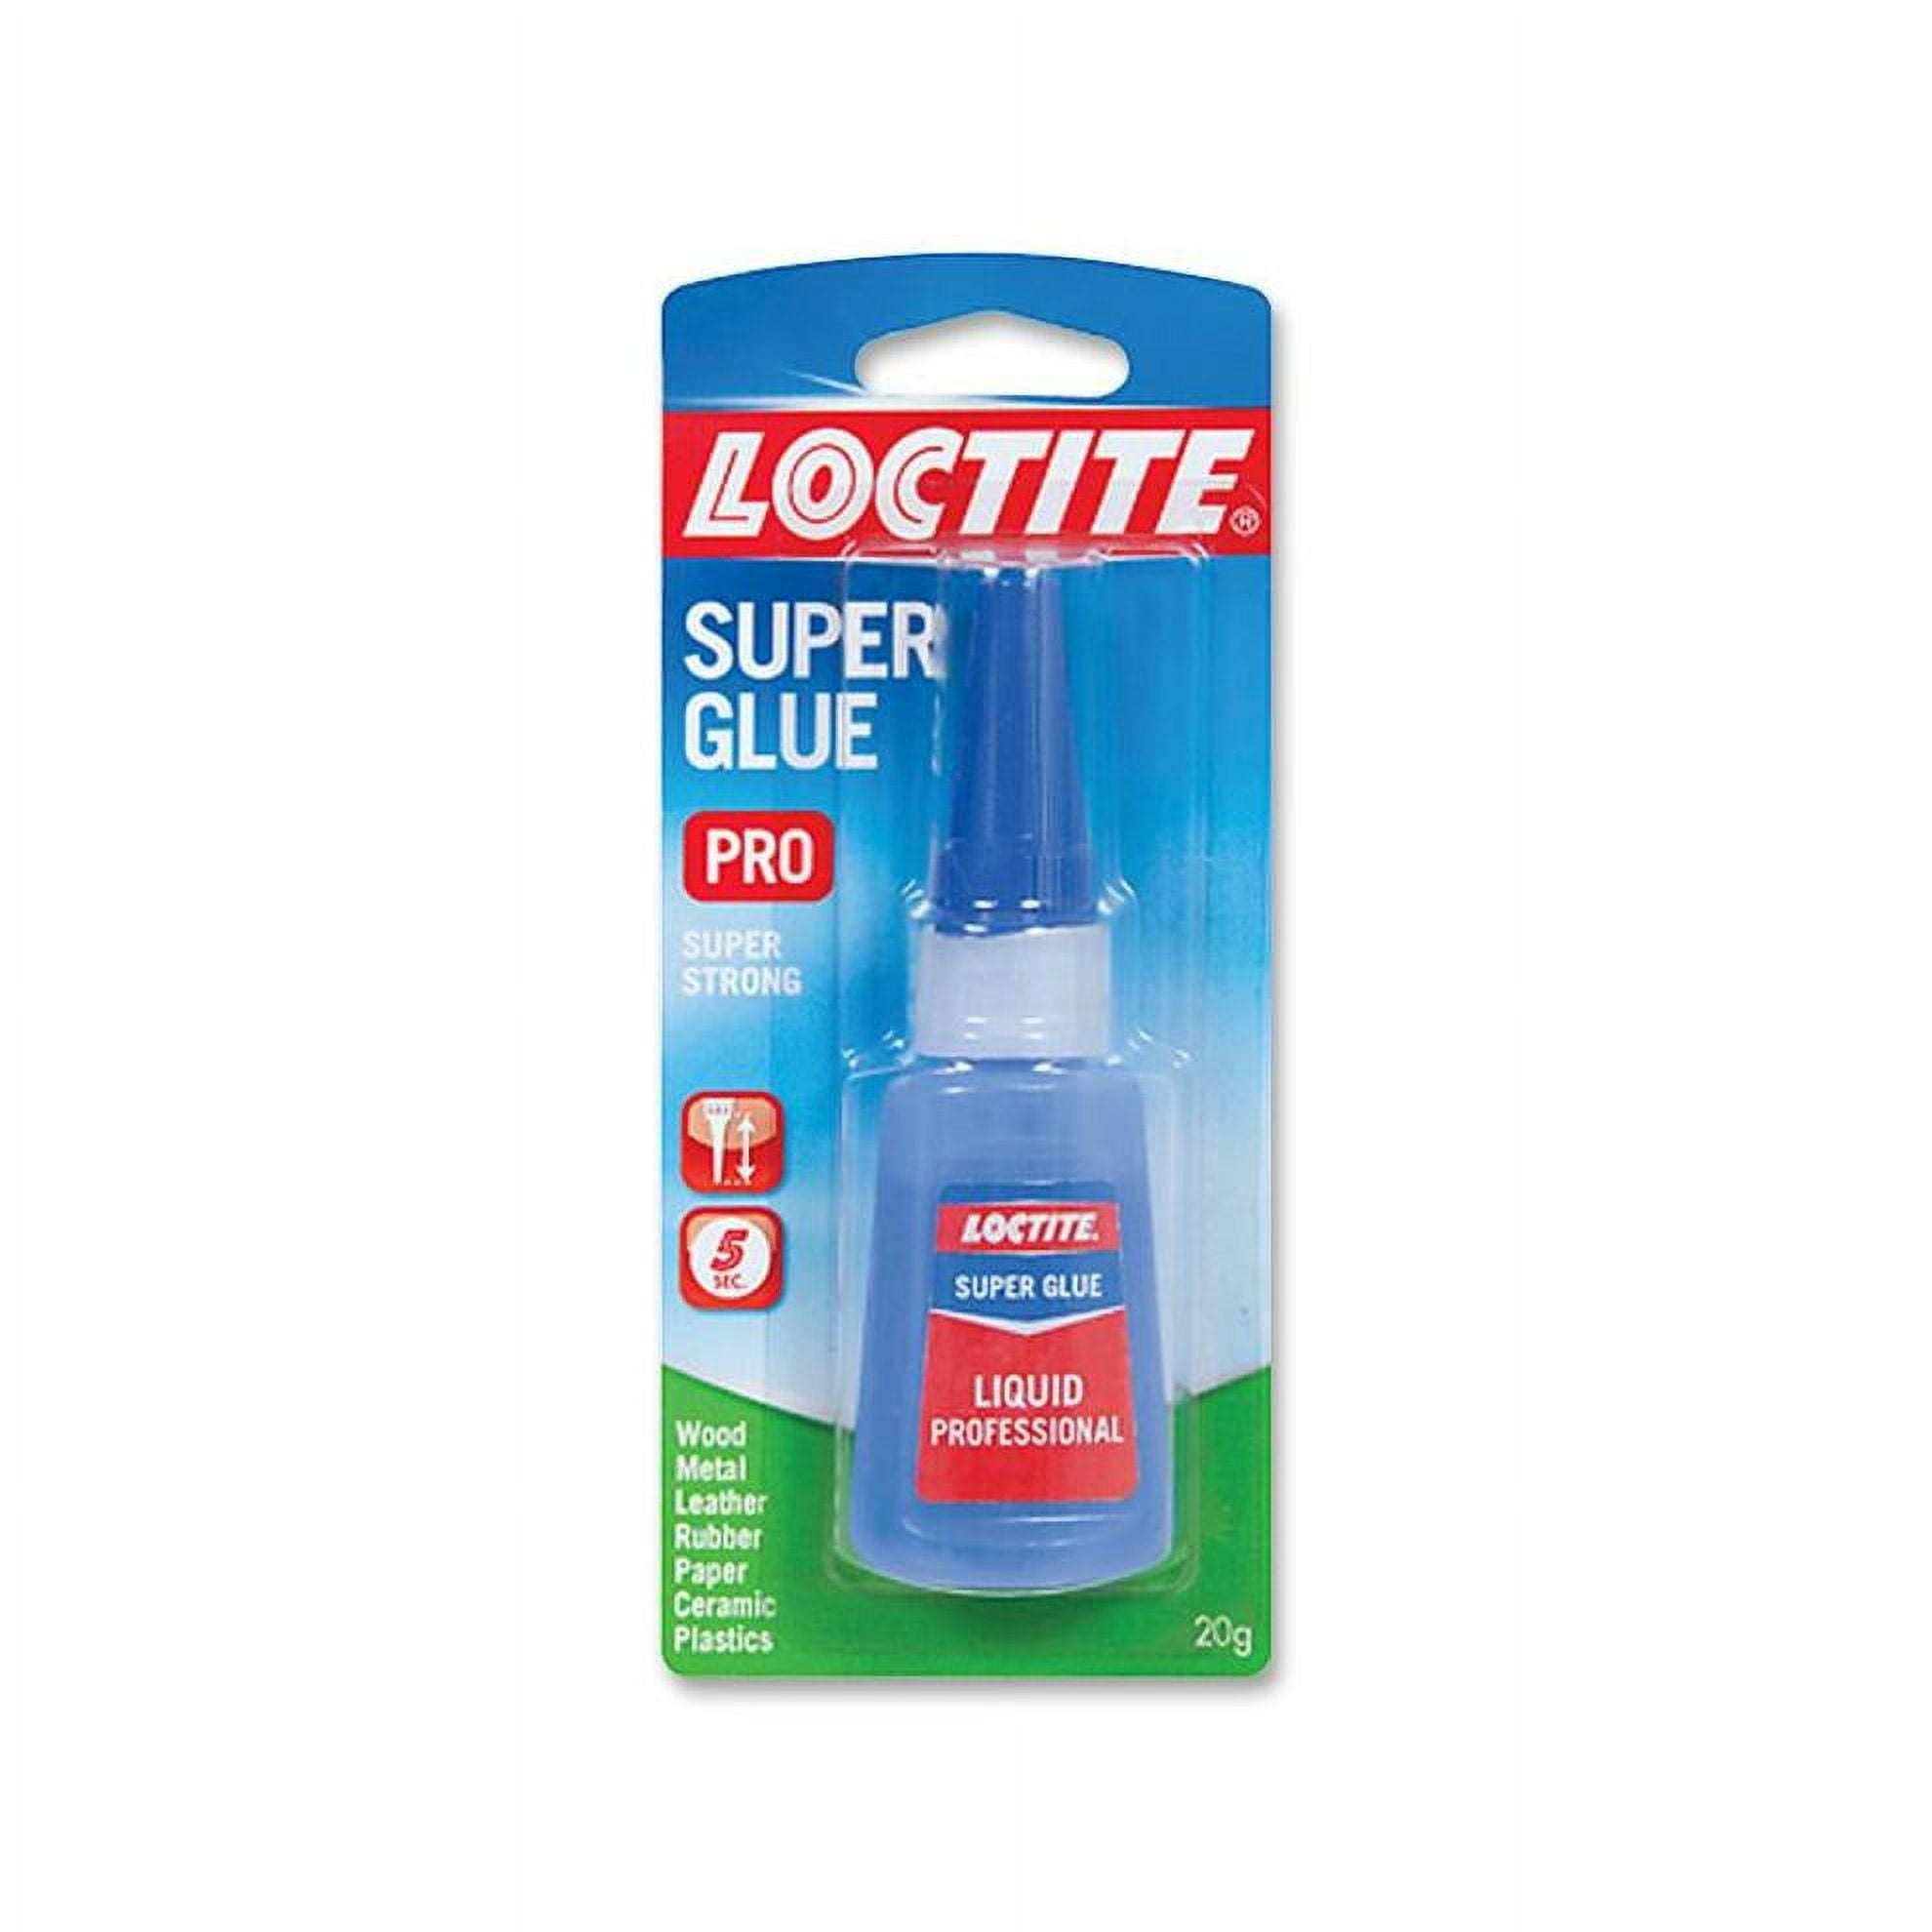 Loctite Professional Bottle Super Glue, Clear, 1 Each (Quantity